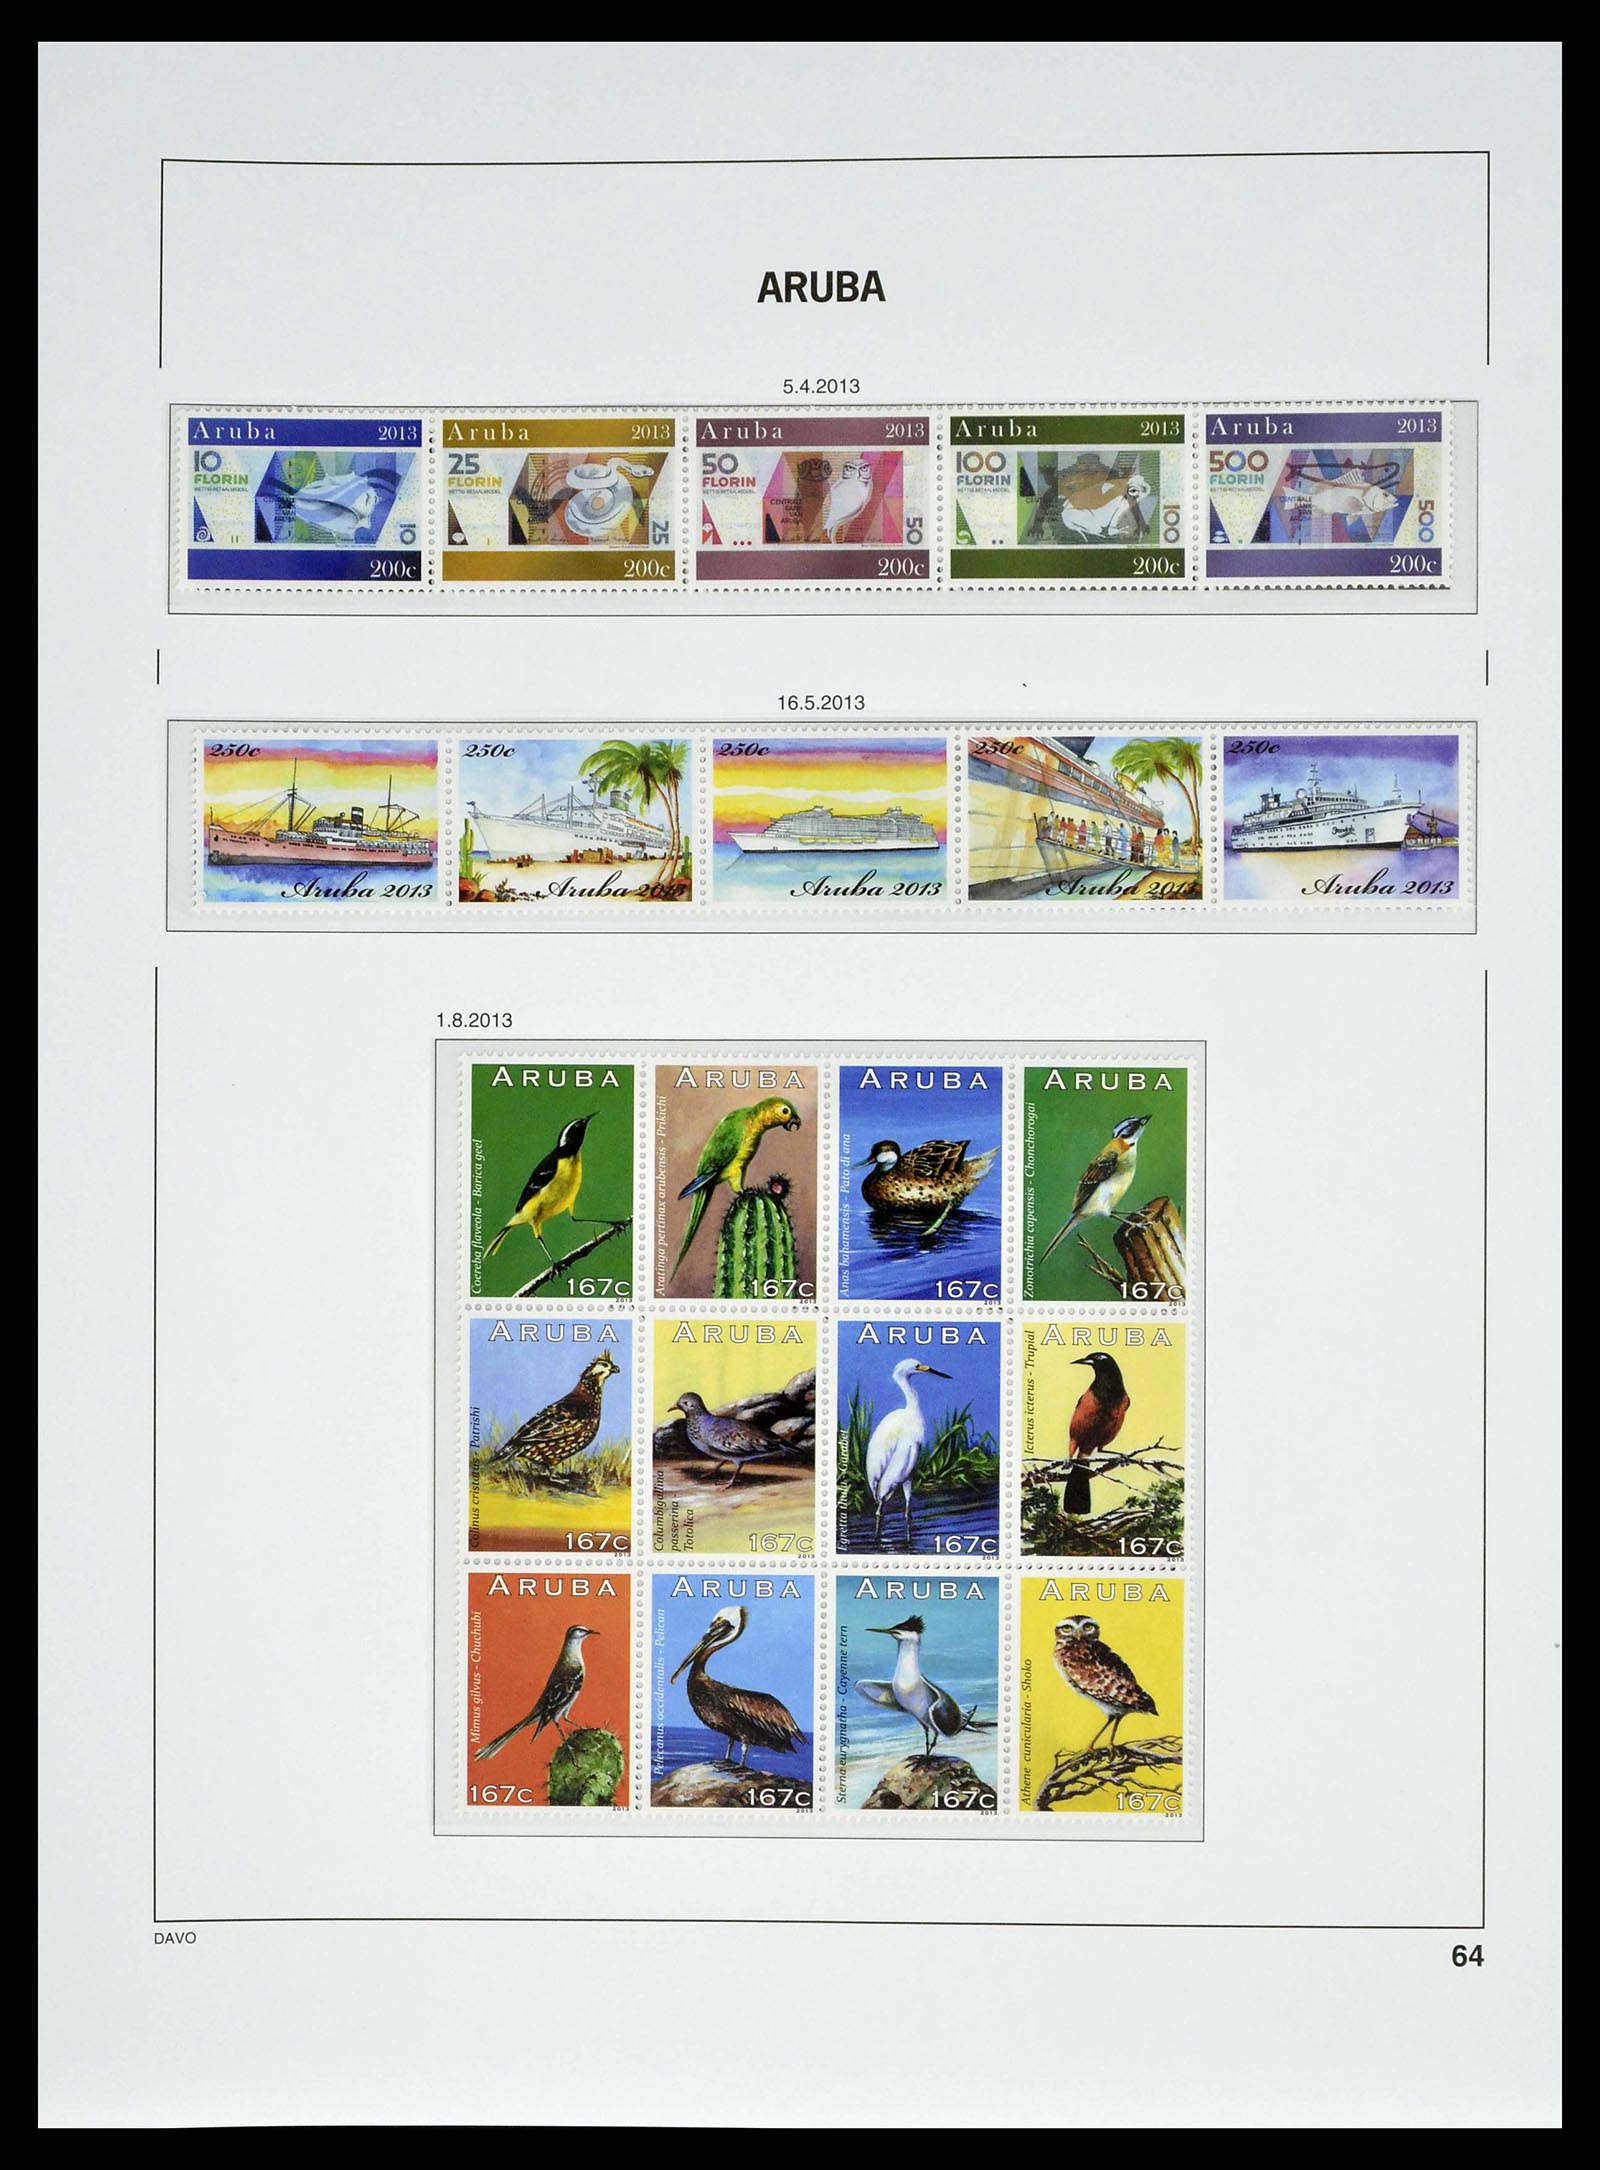 39361 0064 - Stamp collection 39361 Aruba 1986-2013.